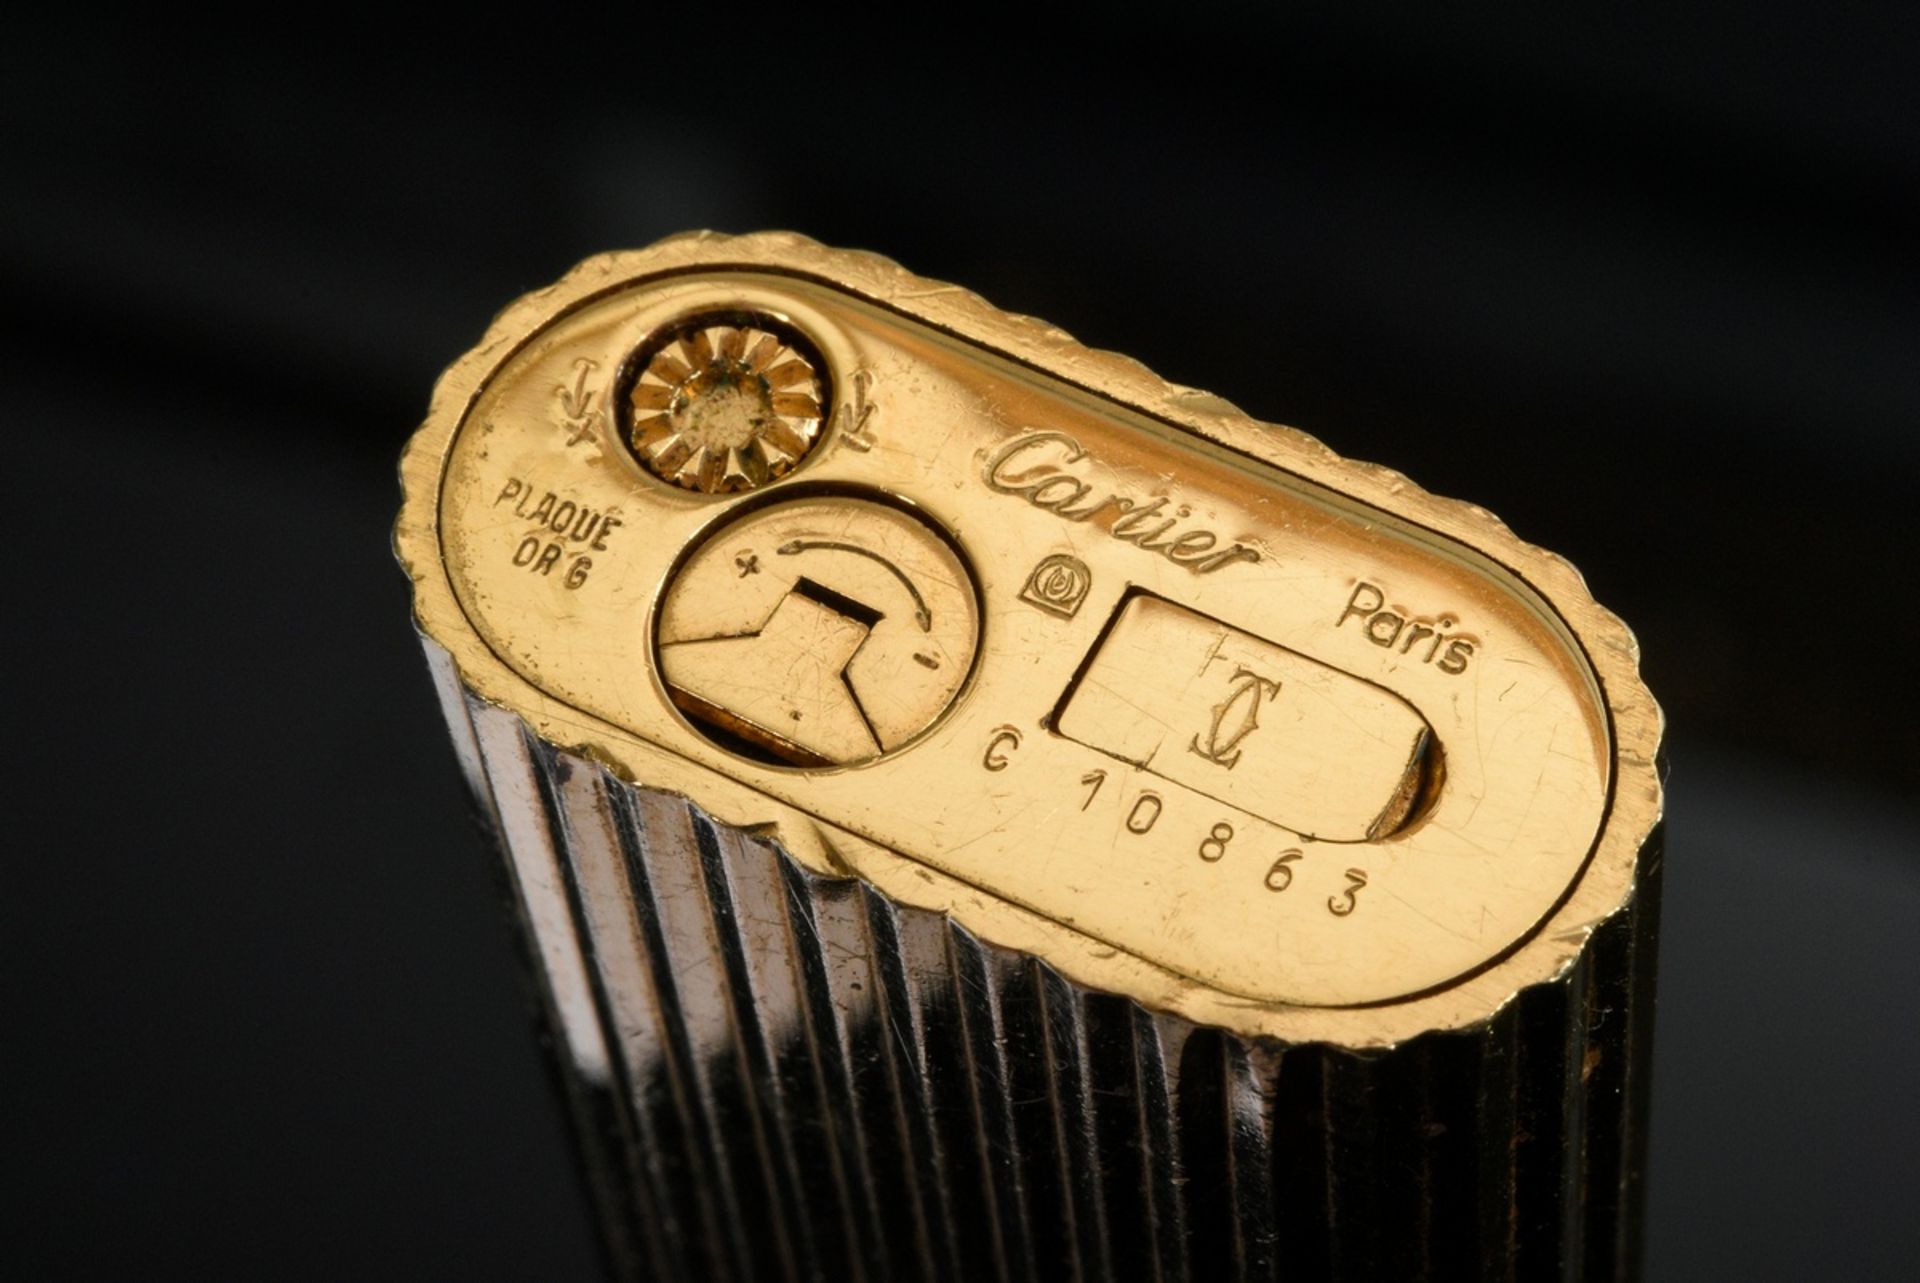 Le Must de Cartier Feuerzeug, Goldauflage, Nr. C 10863, 7x2,5cm, funktionstüchtig, Kratzer, starke  - Bild 5 aus 5